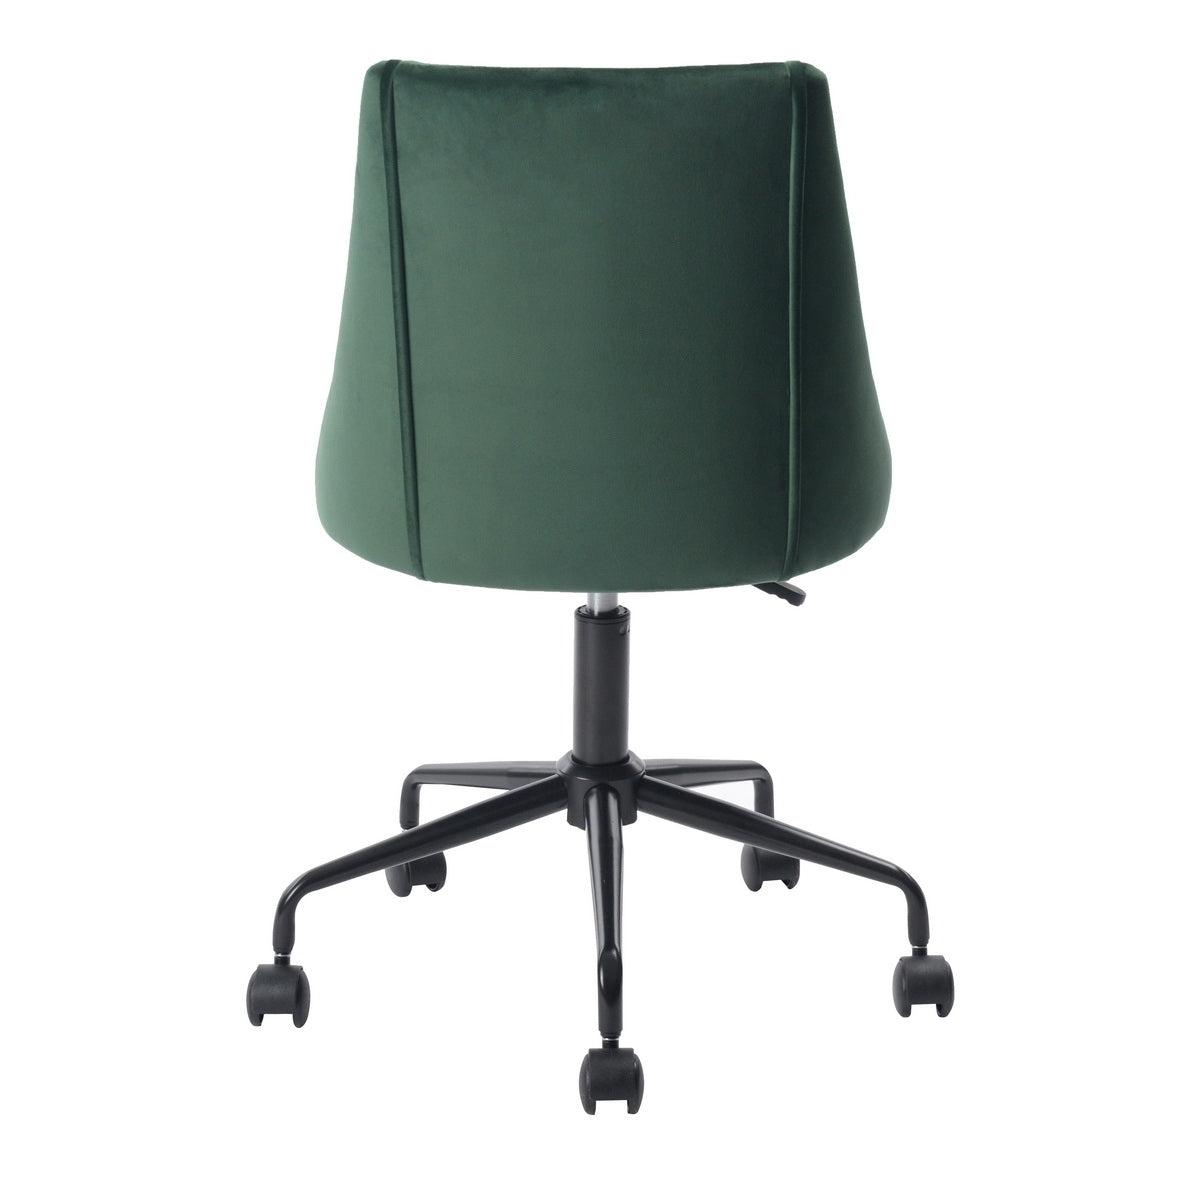 Velvet Upholstered Task Chair/ Home Office Chair - Green